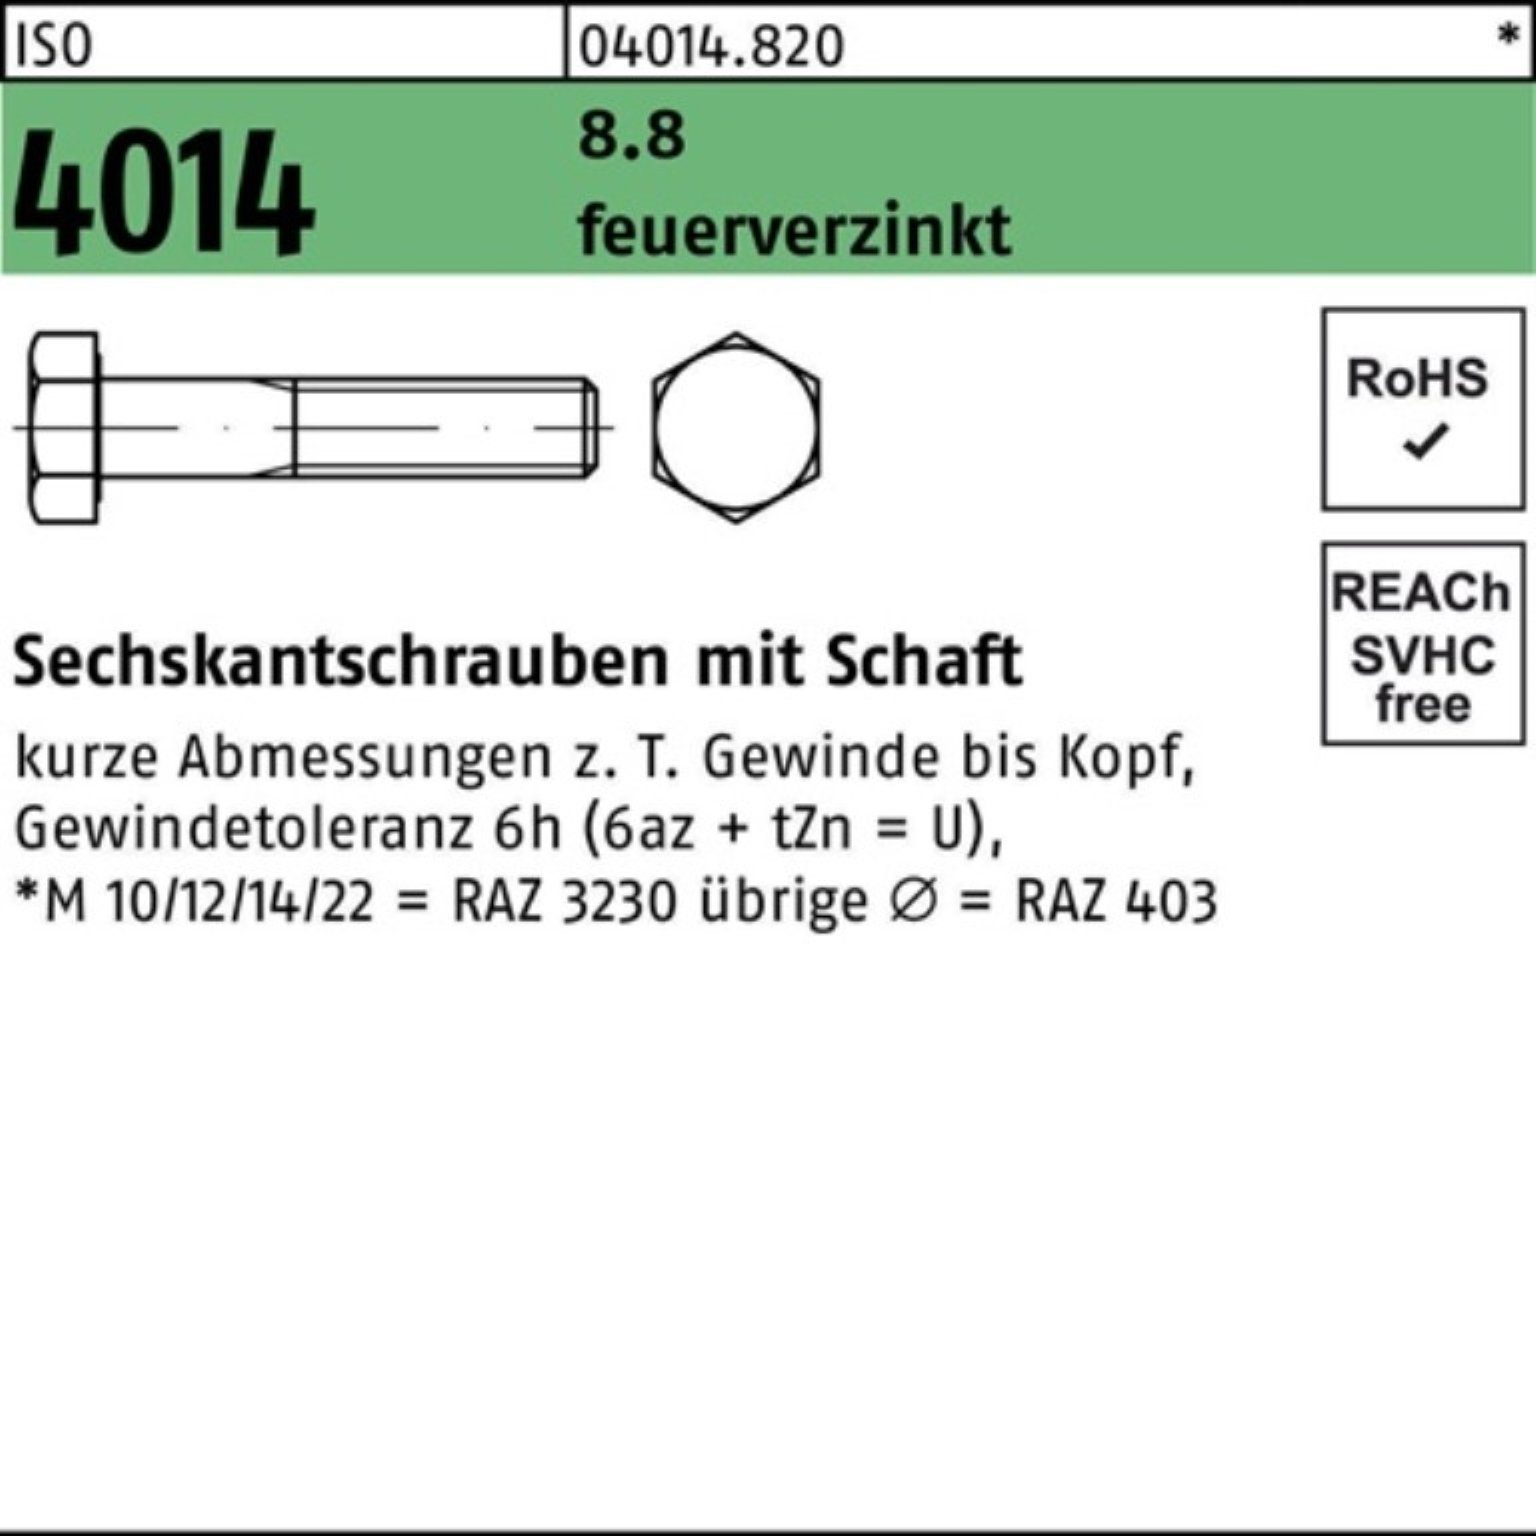 Bufab Sechskantschraube 100er 8.8 1 M20x ISO 180 Sechskantschraube feuerverz. Pack 4014 Schaft